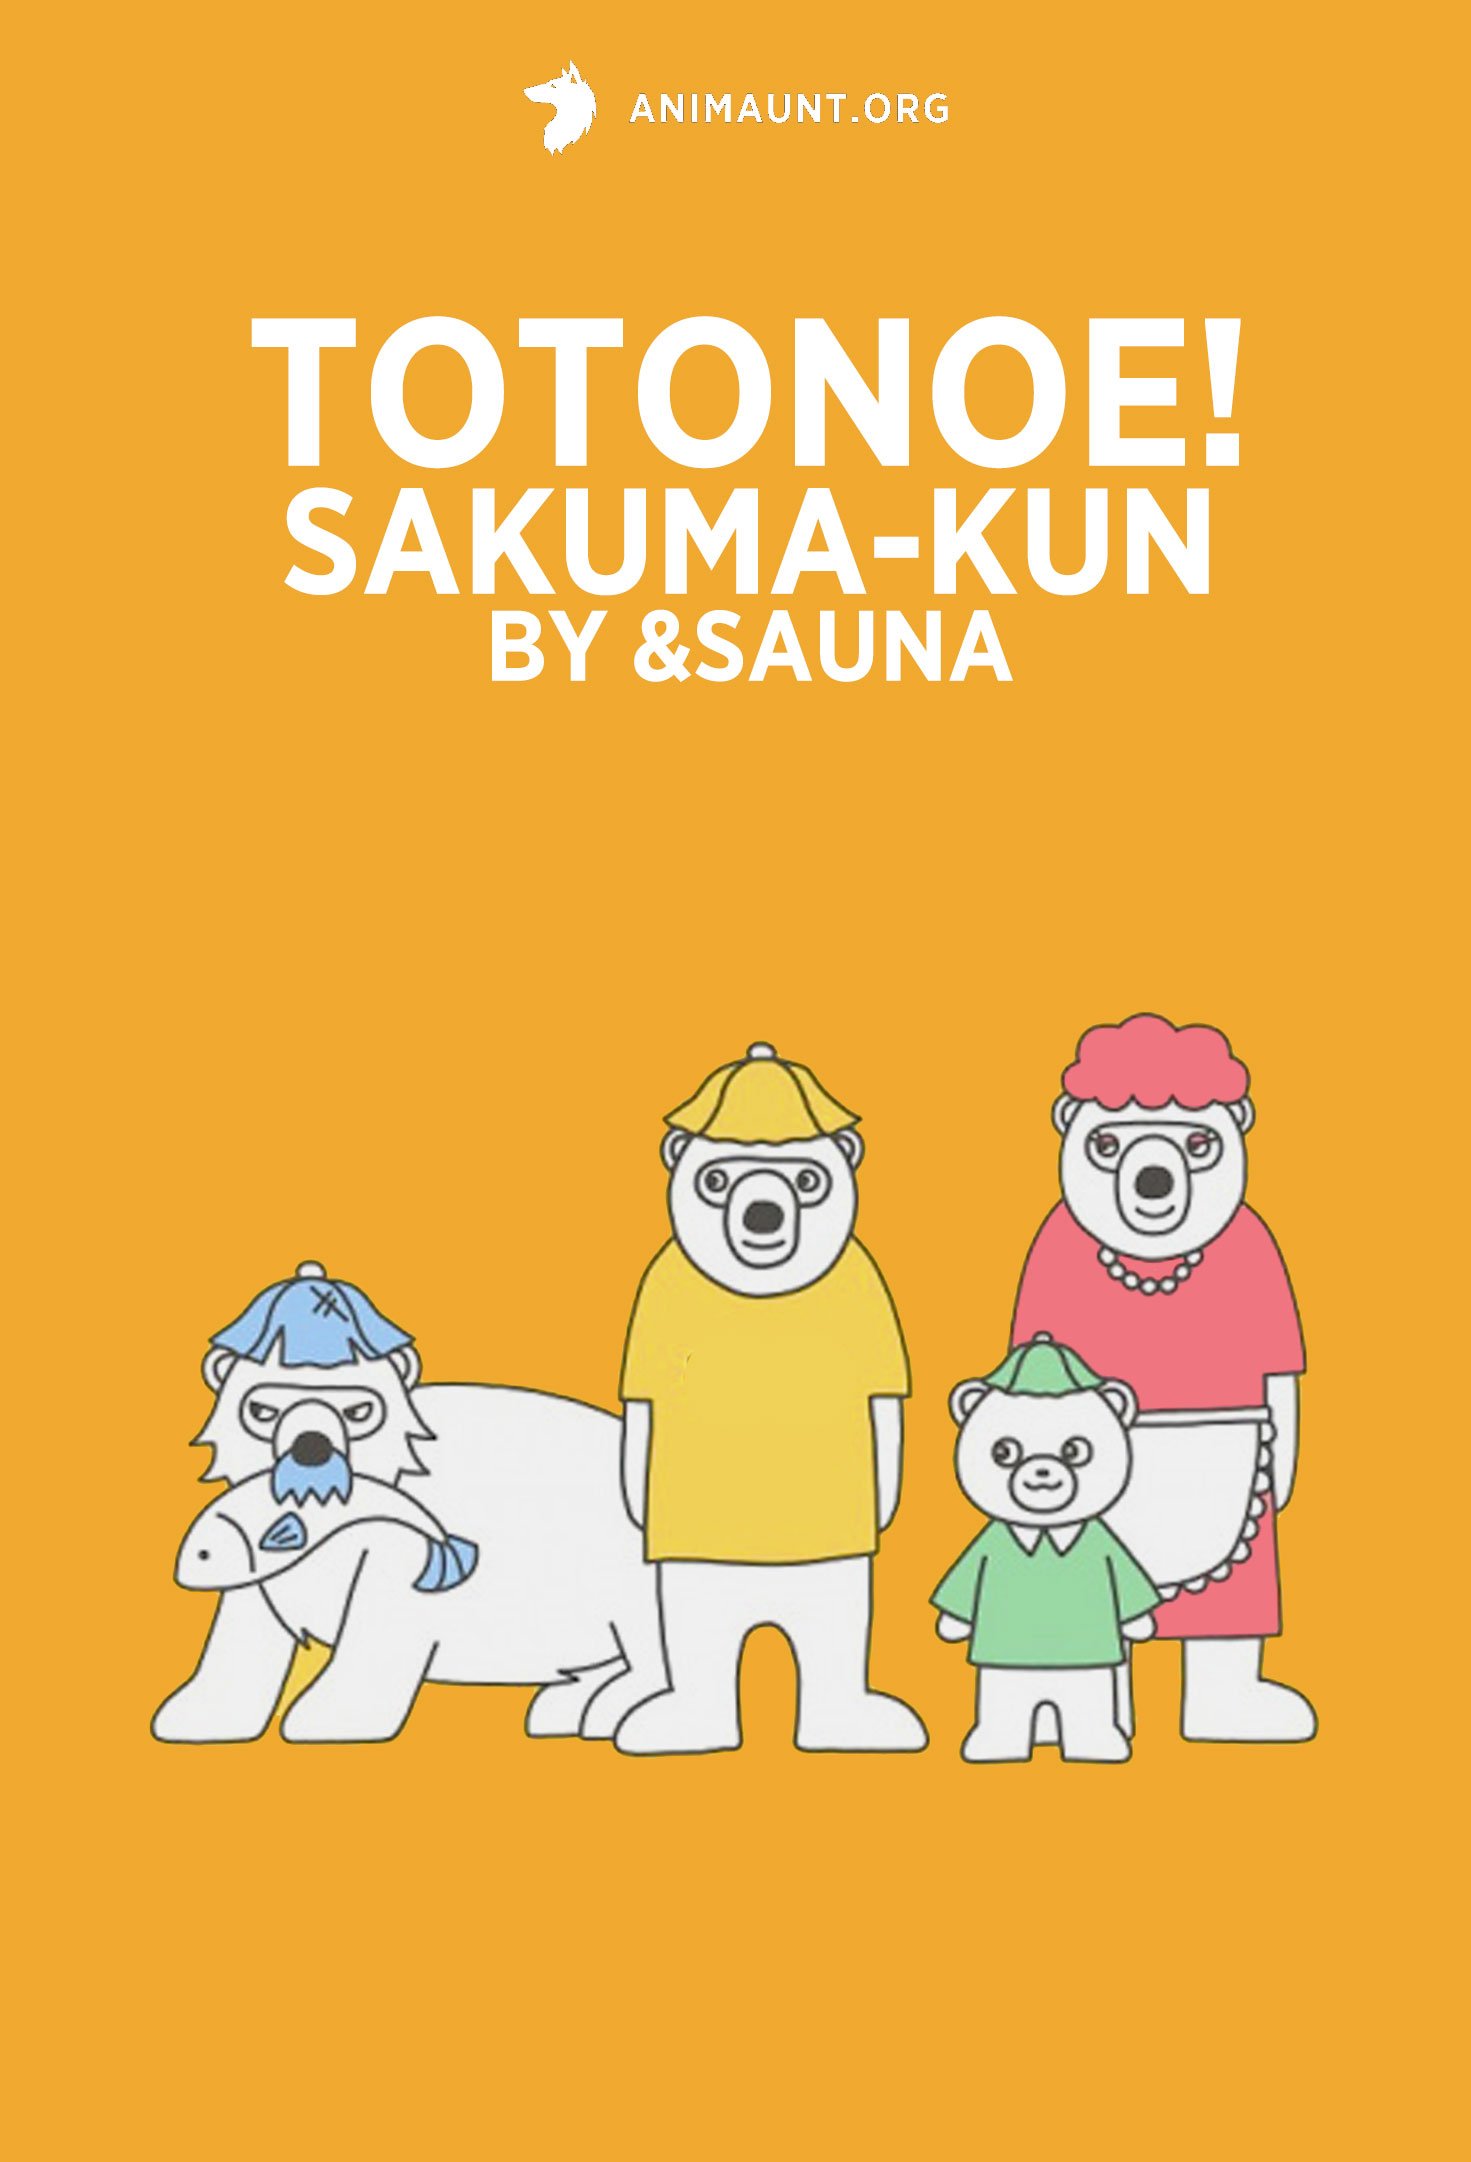 Totonoe! Sakuma-kun by &sauna